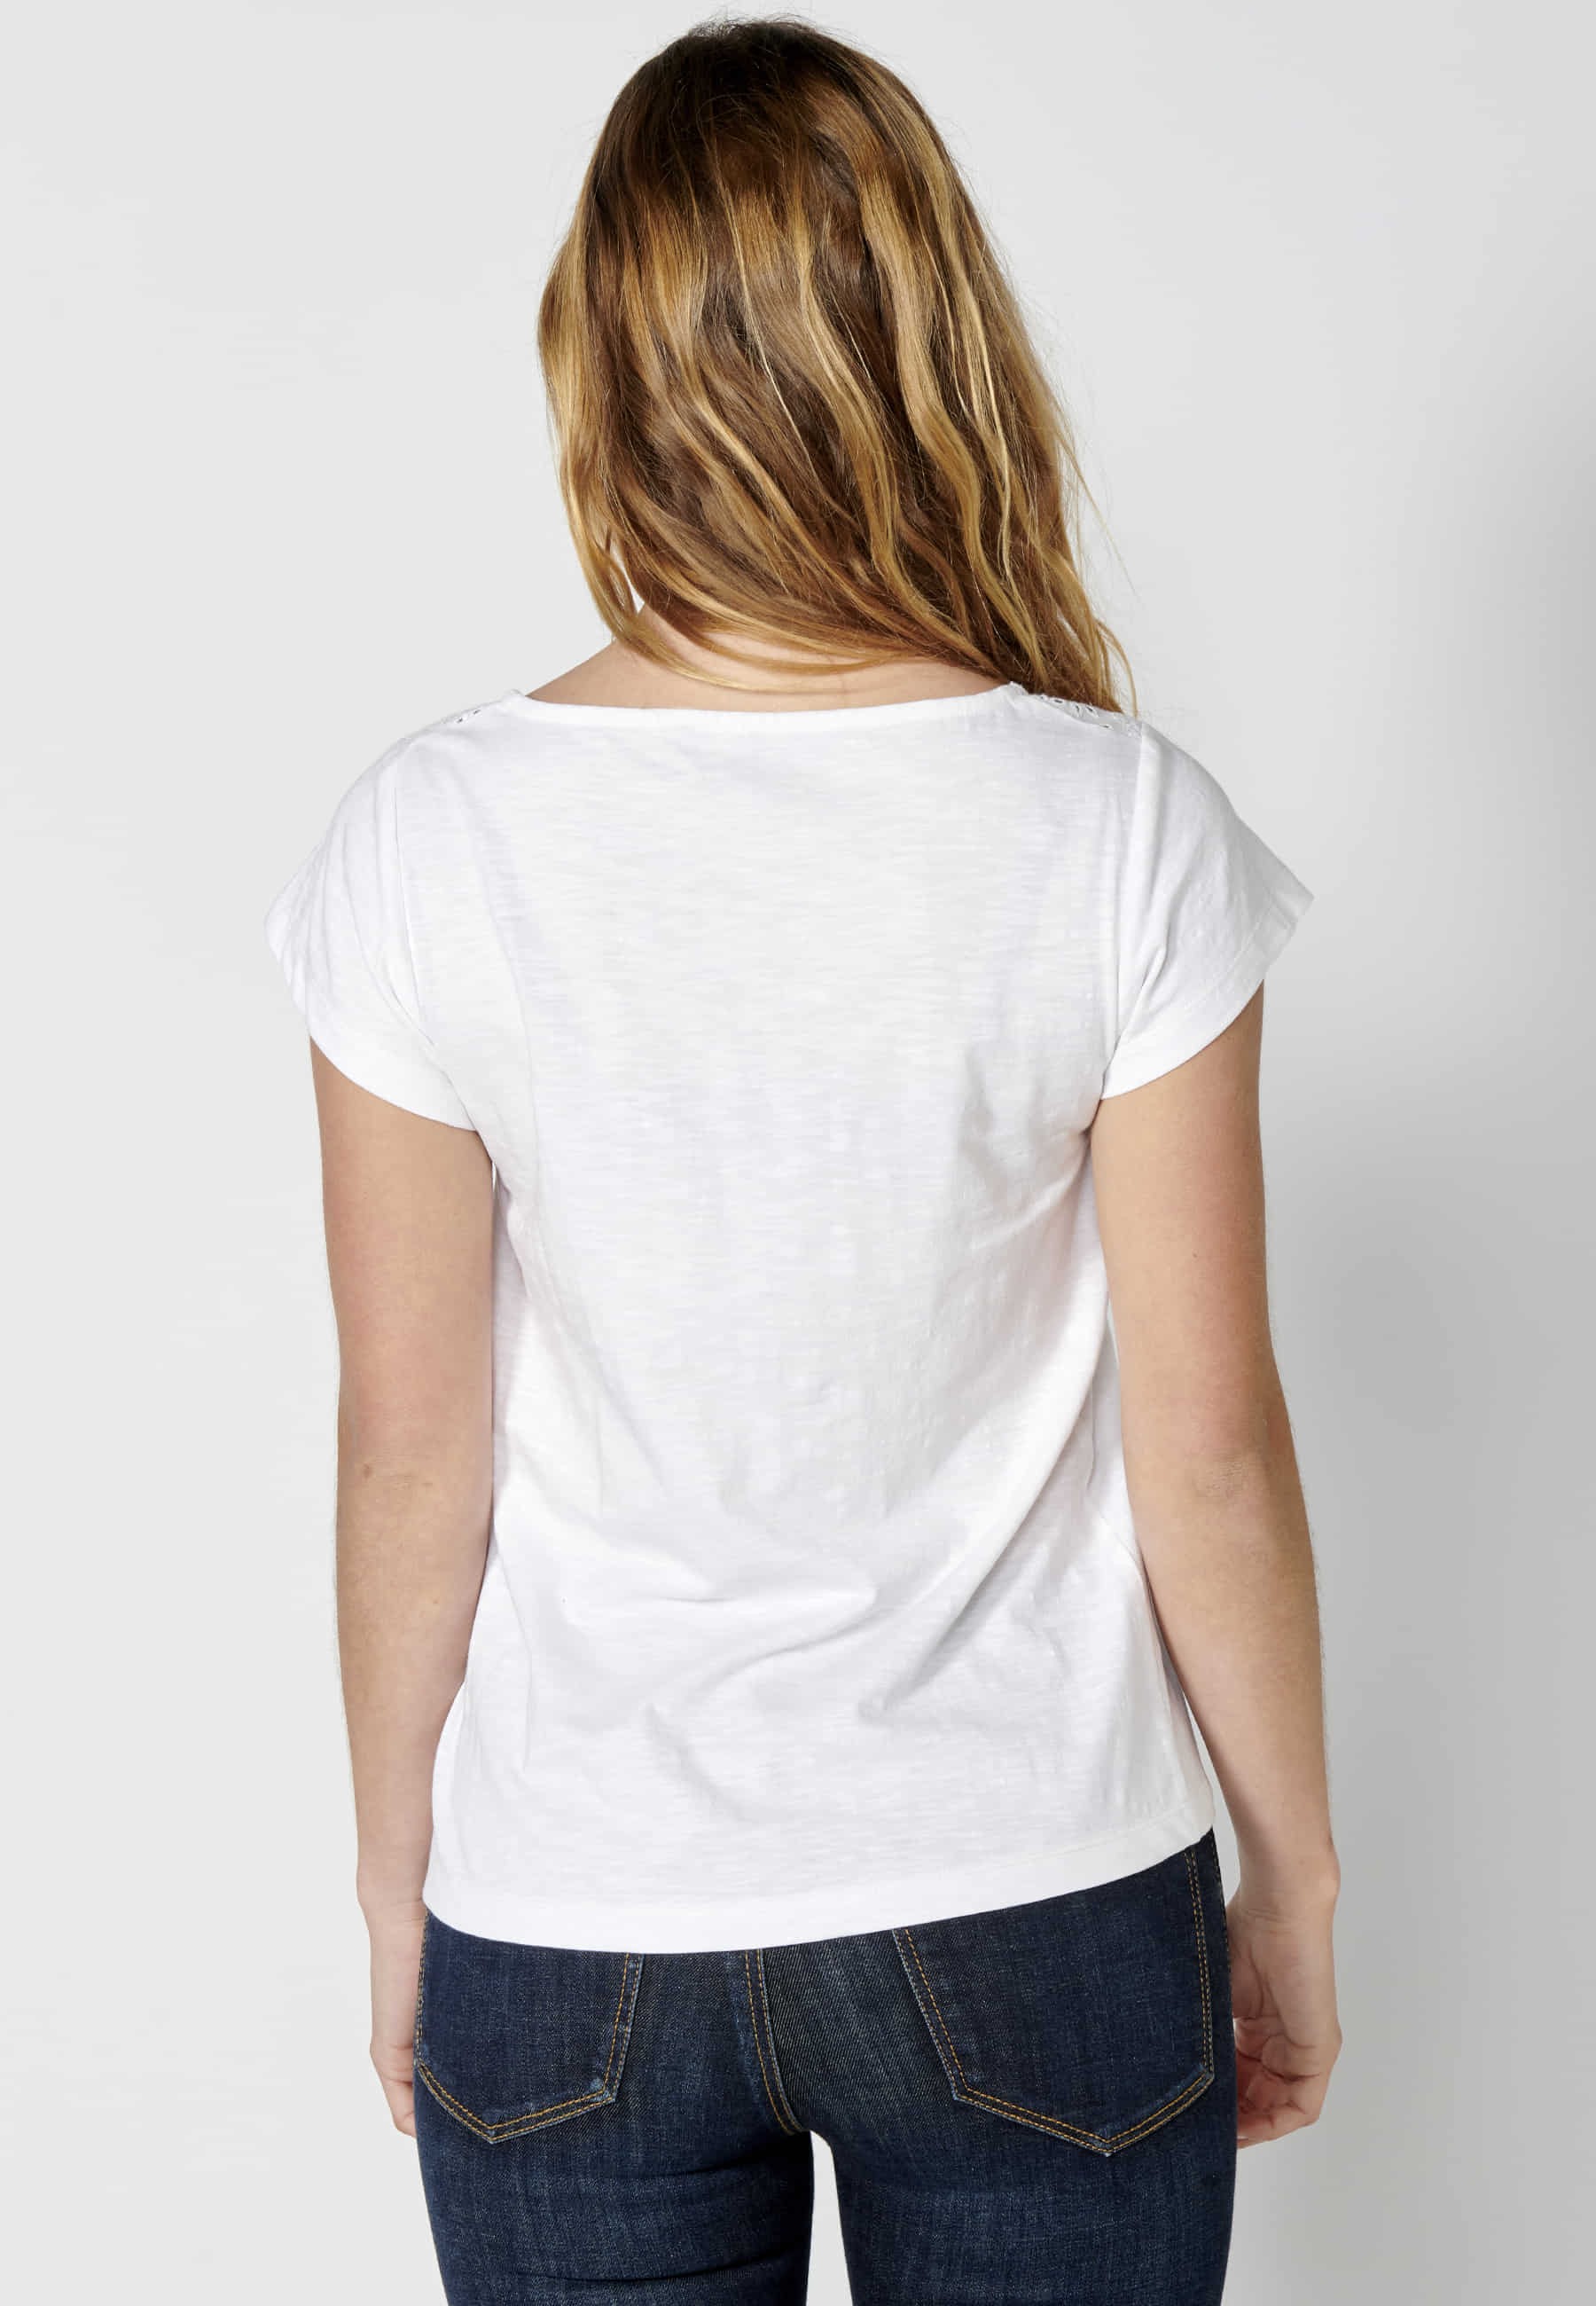 Camiseta top manga corta de Algodón con escote corazón color Blanco para Mujer